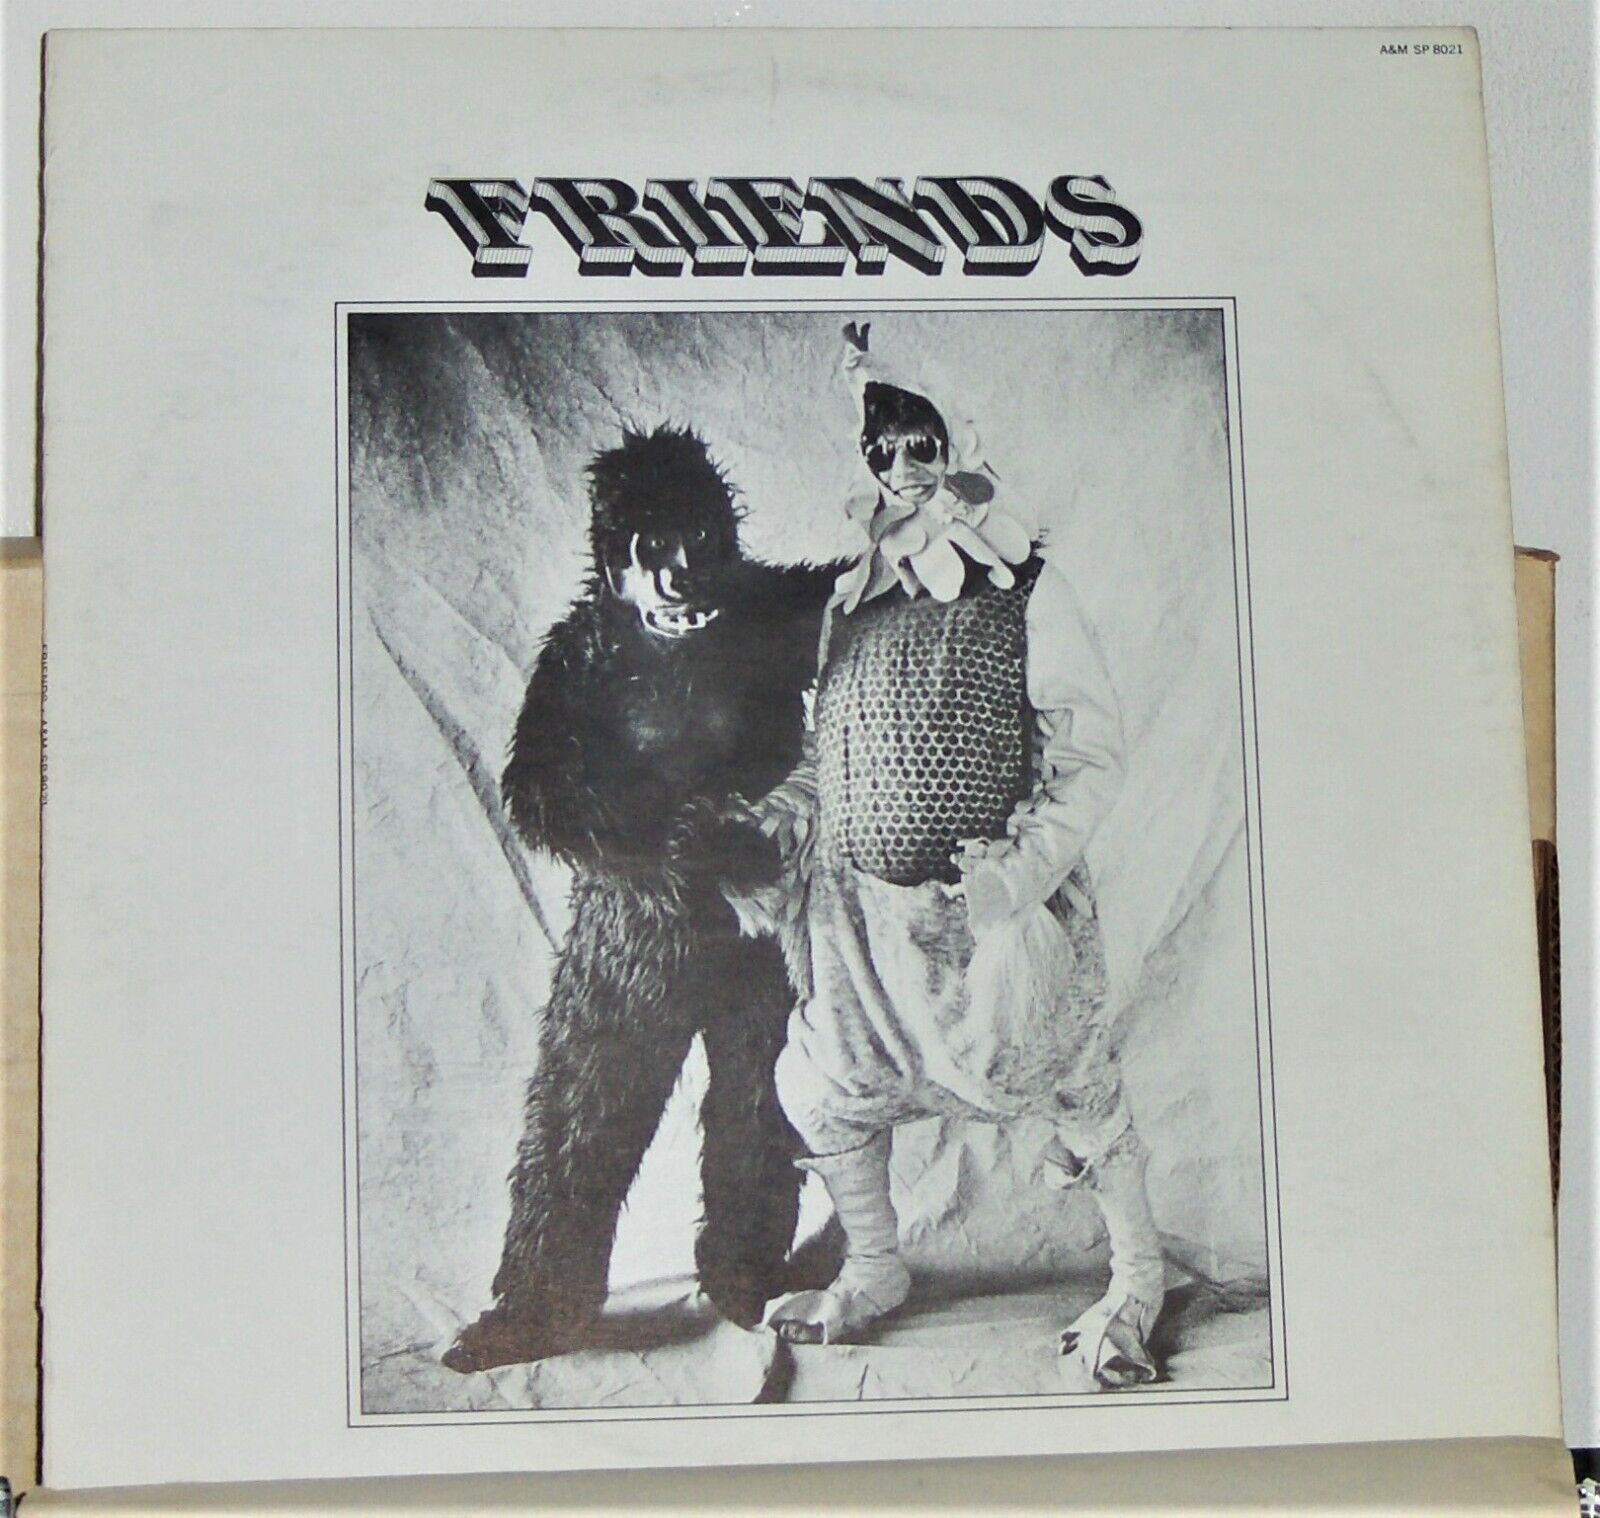 Friends - Various 1970 Rock Artist - LP Record Album - Vinyl Excellent